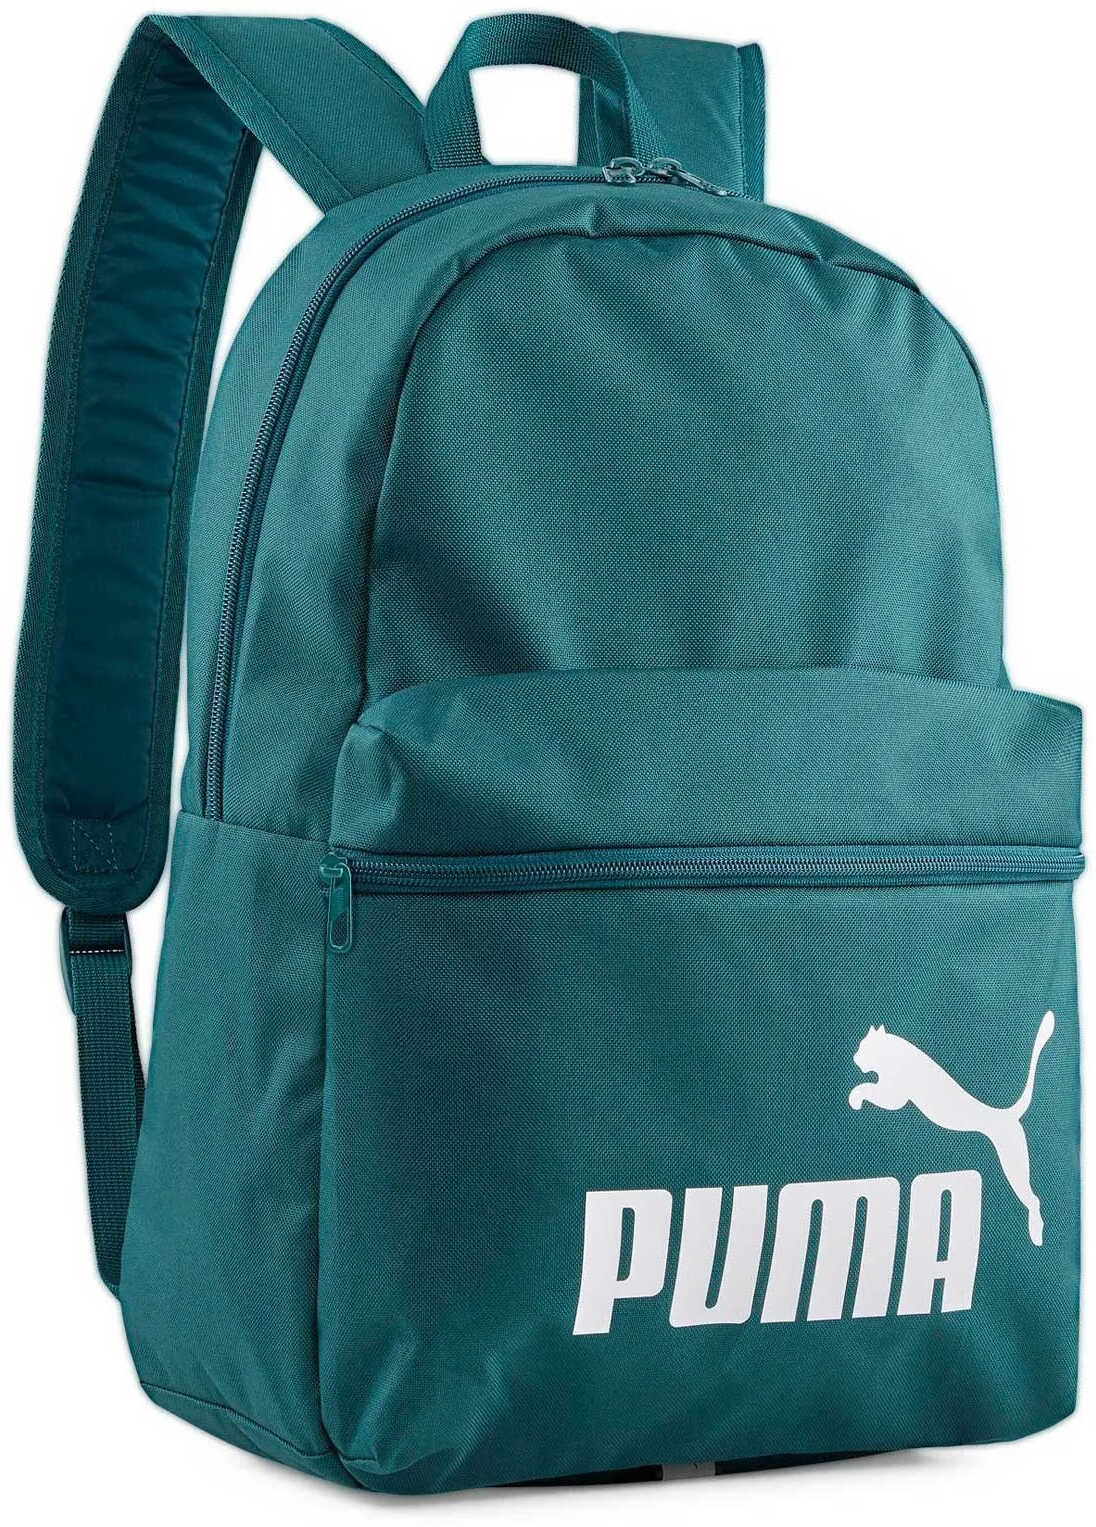 PUMA Phase Backpack turkusowy